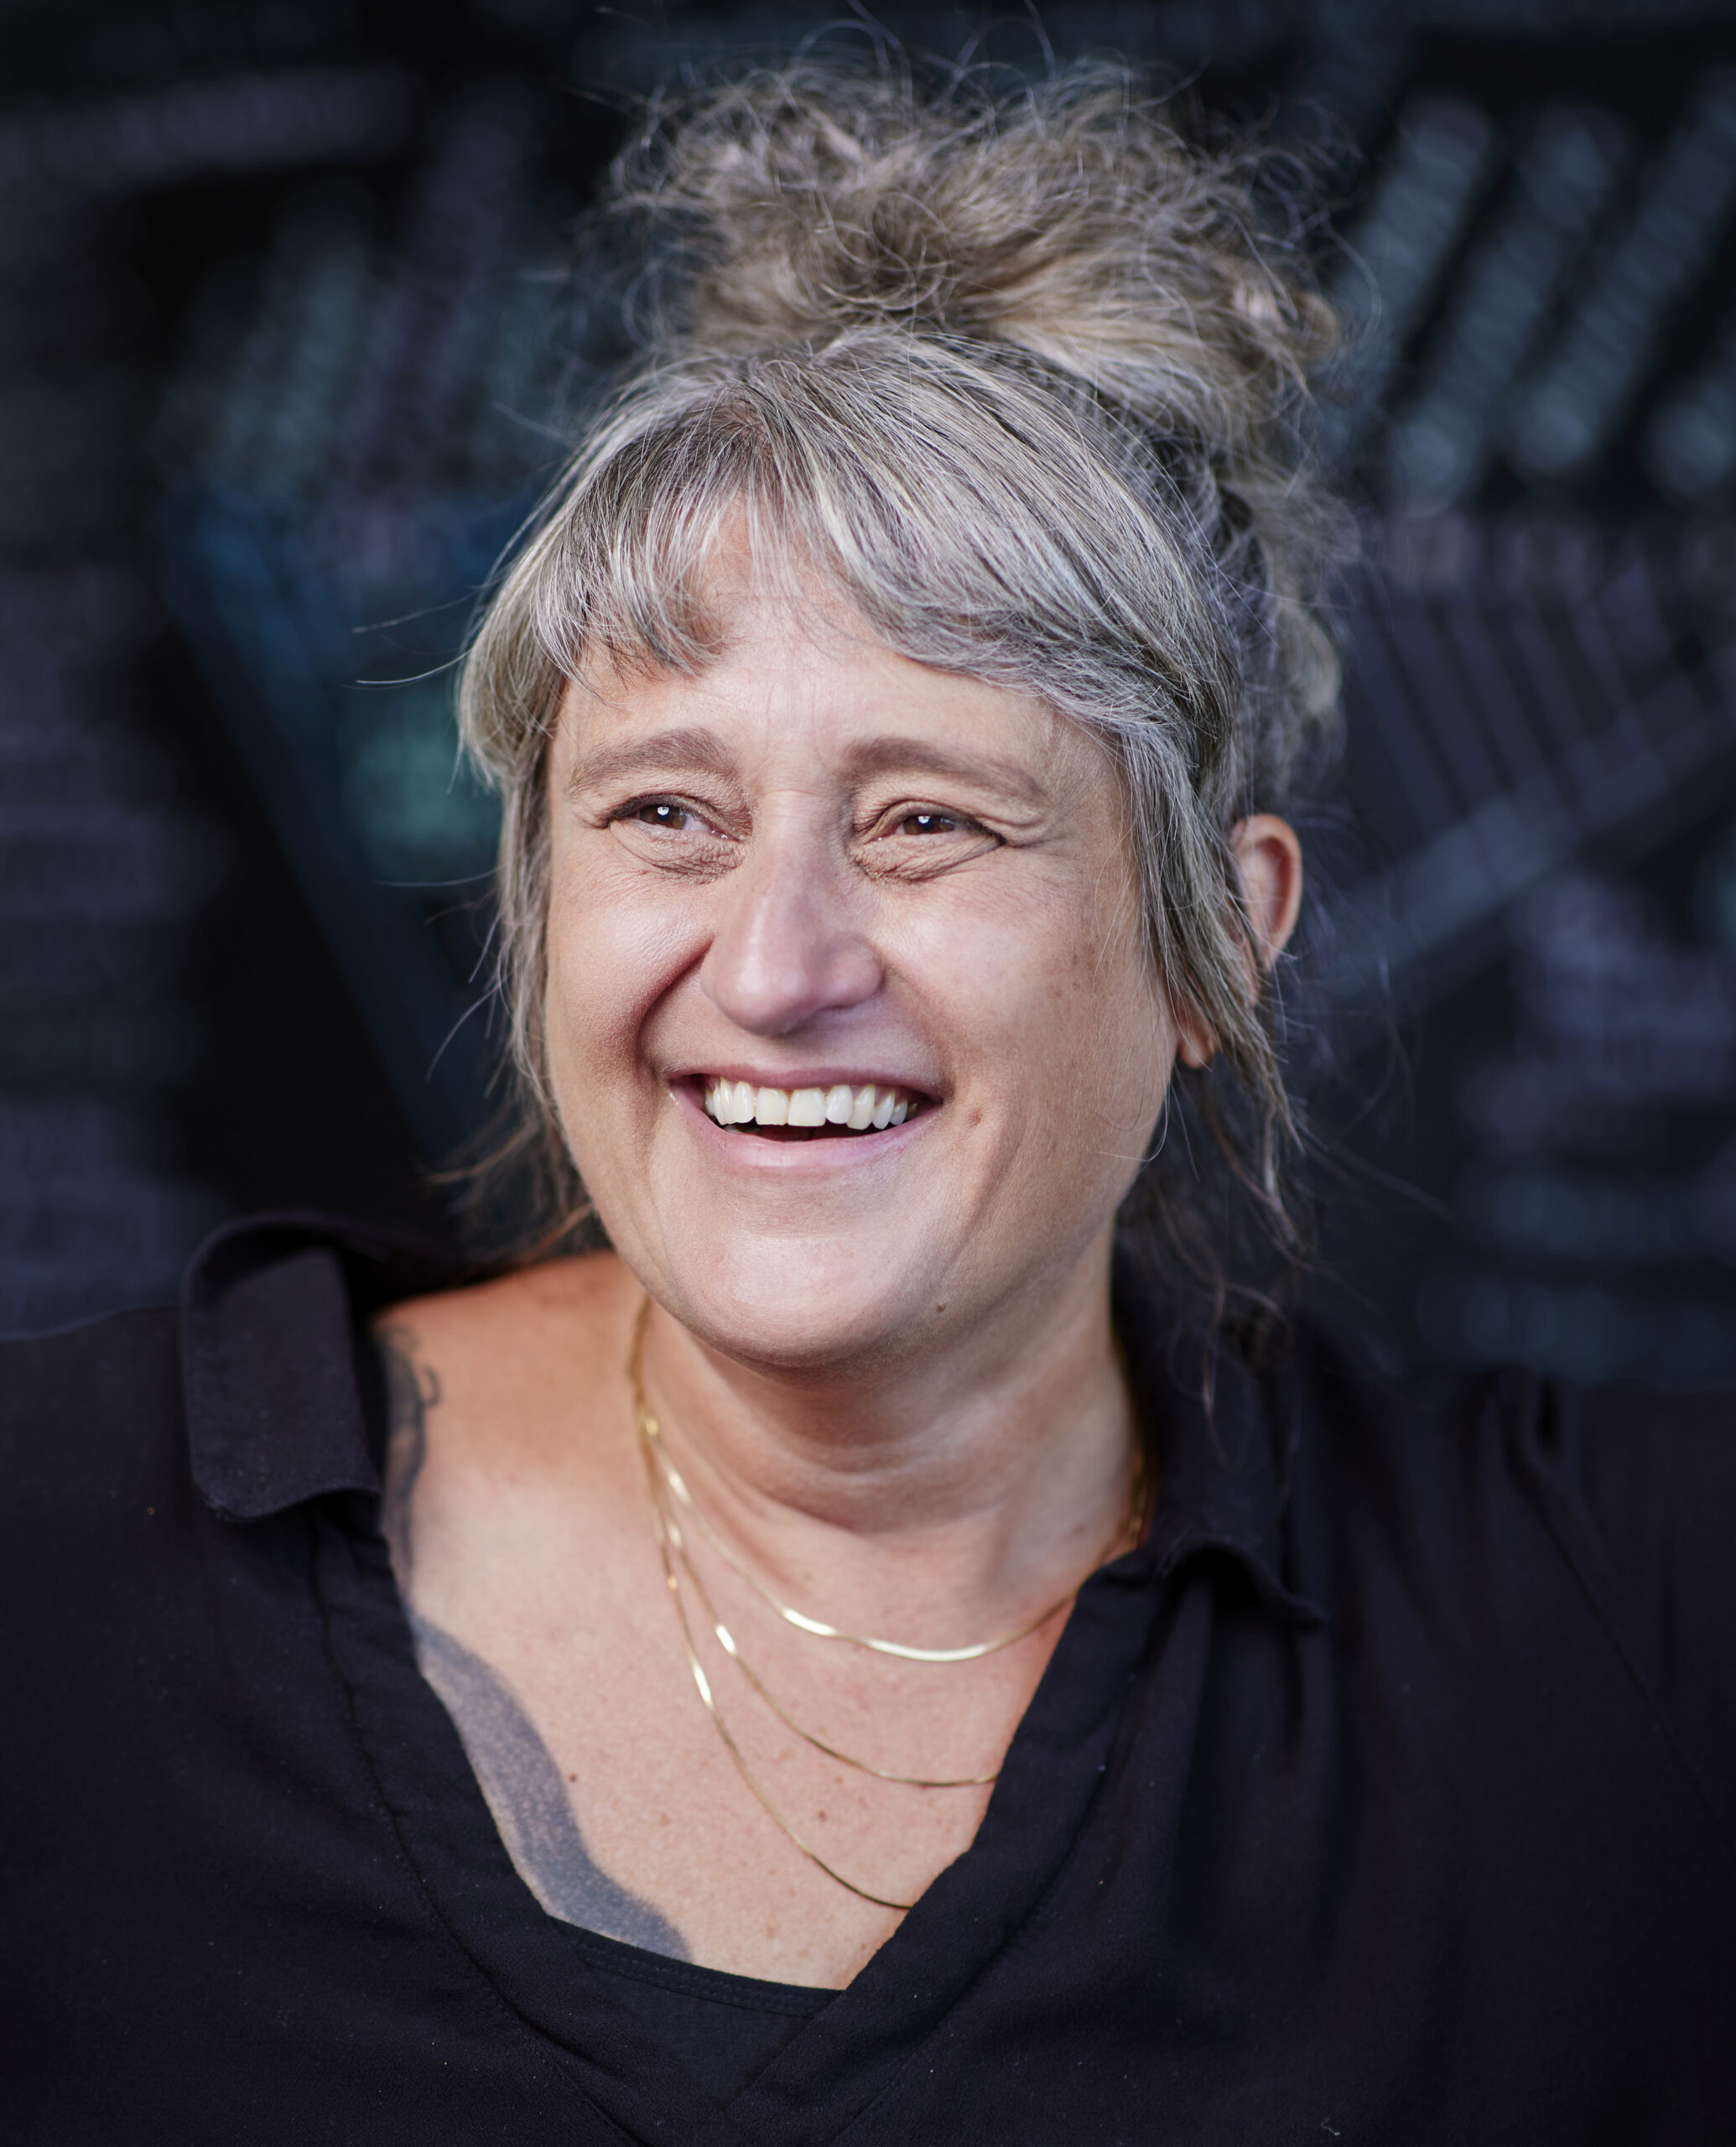 Scientist Gül Dölen smiling in her office, dark chalkboard in background.